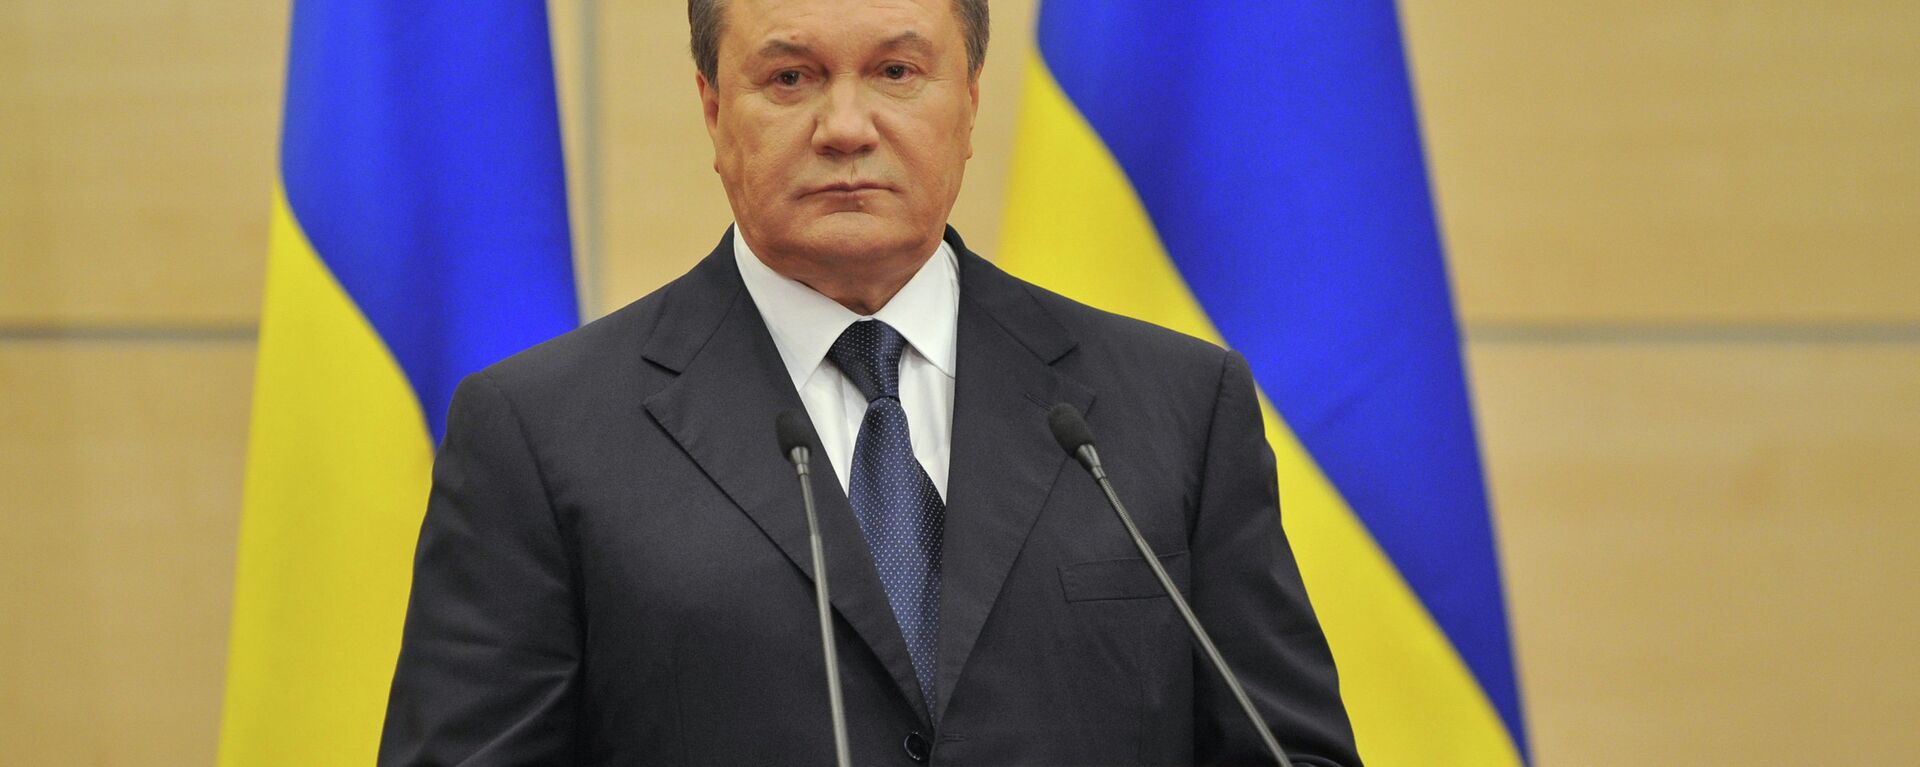 Ukrayna'nın eski devlet başkanı Viktor Yanukoviç - Sputnik Türkiye, 1920, 17.08.2021